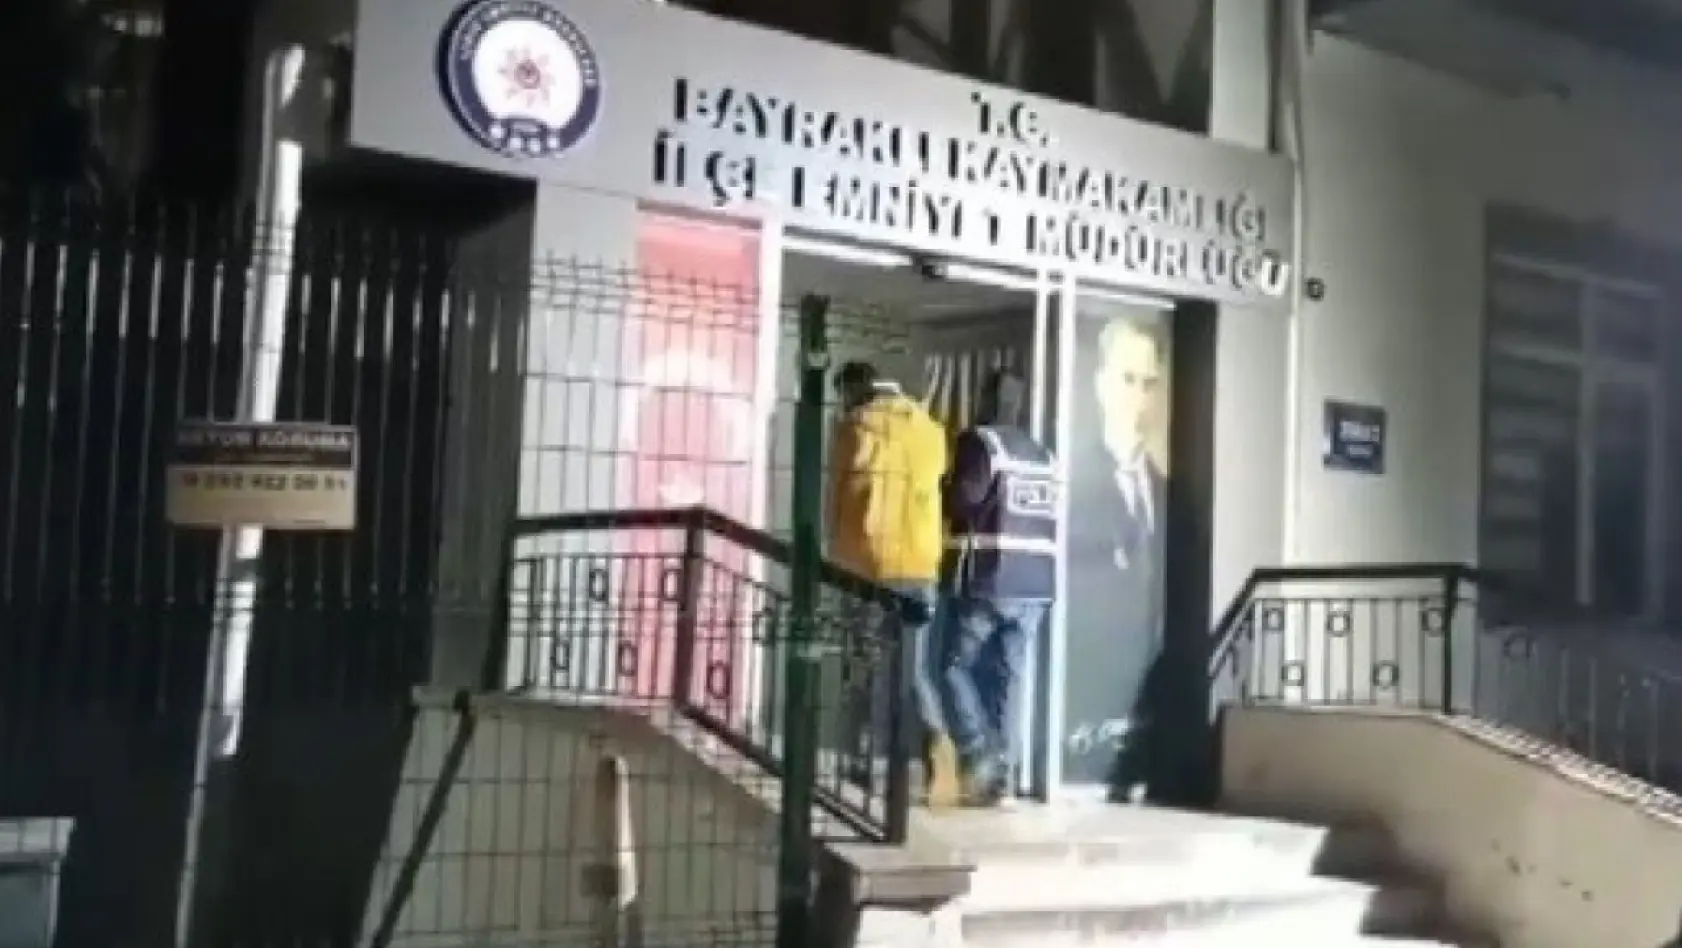 İzmir'de 146 adrese eş zamanlı baskın, 271 zanlı yakalandı